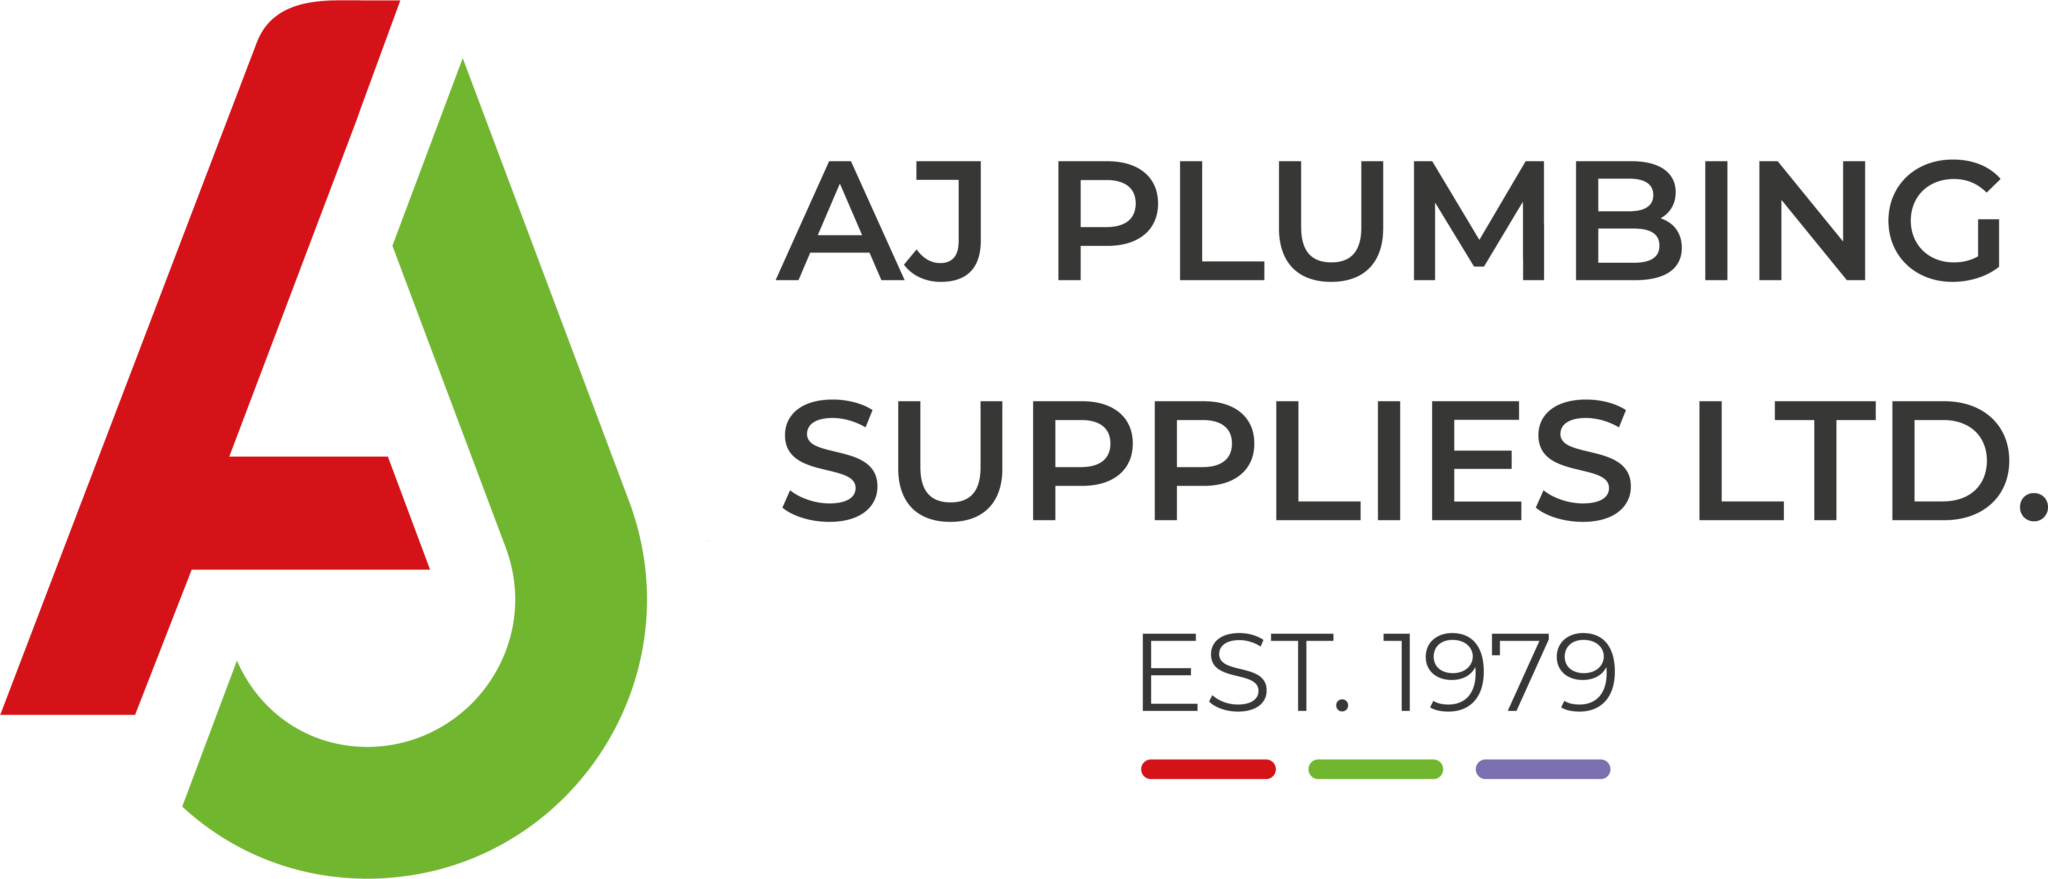 AJ Plumbing Supplies